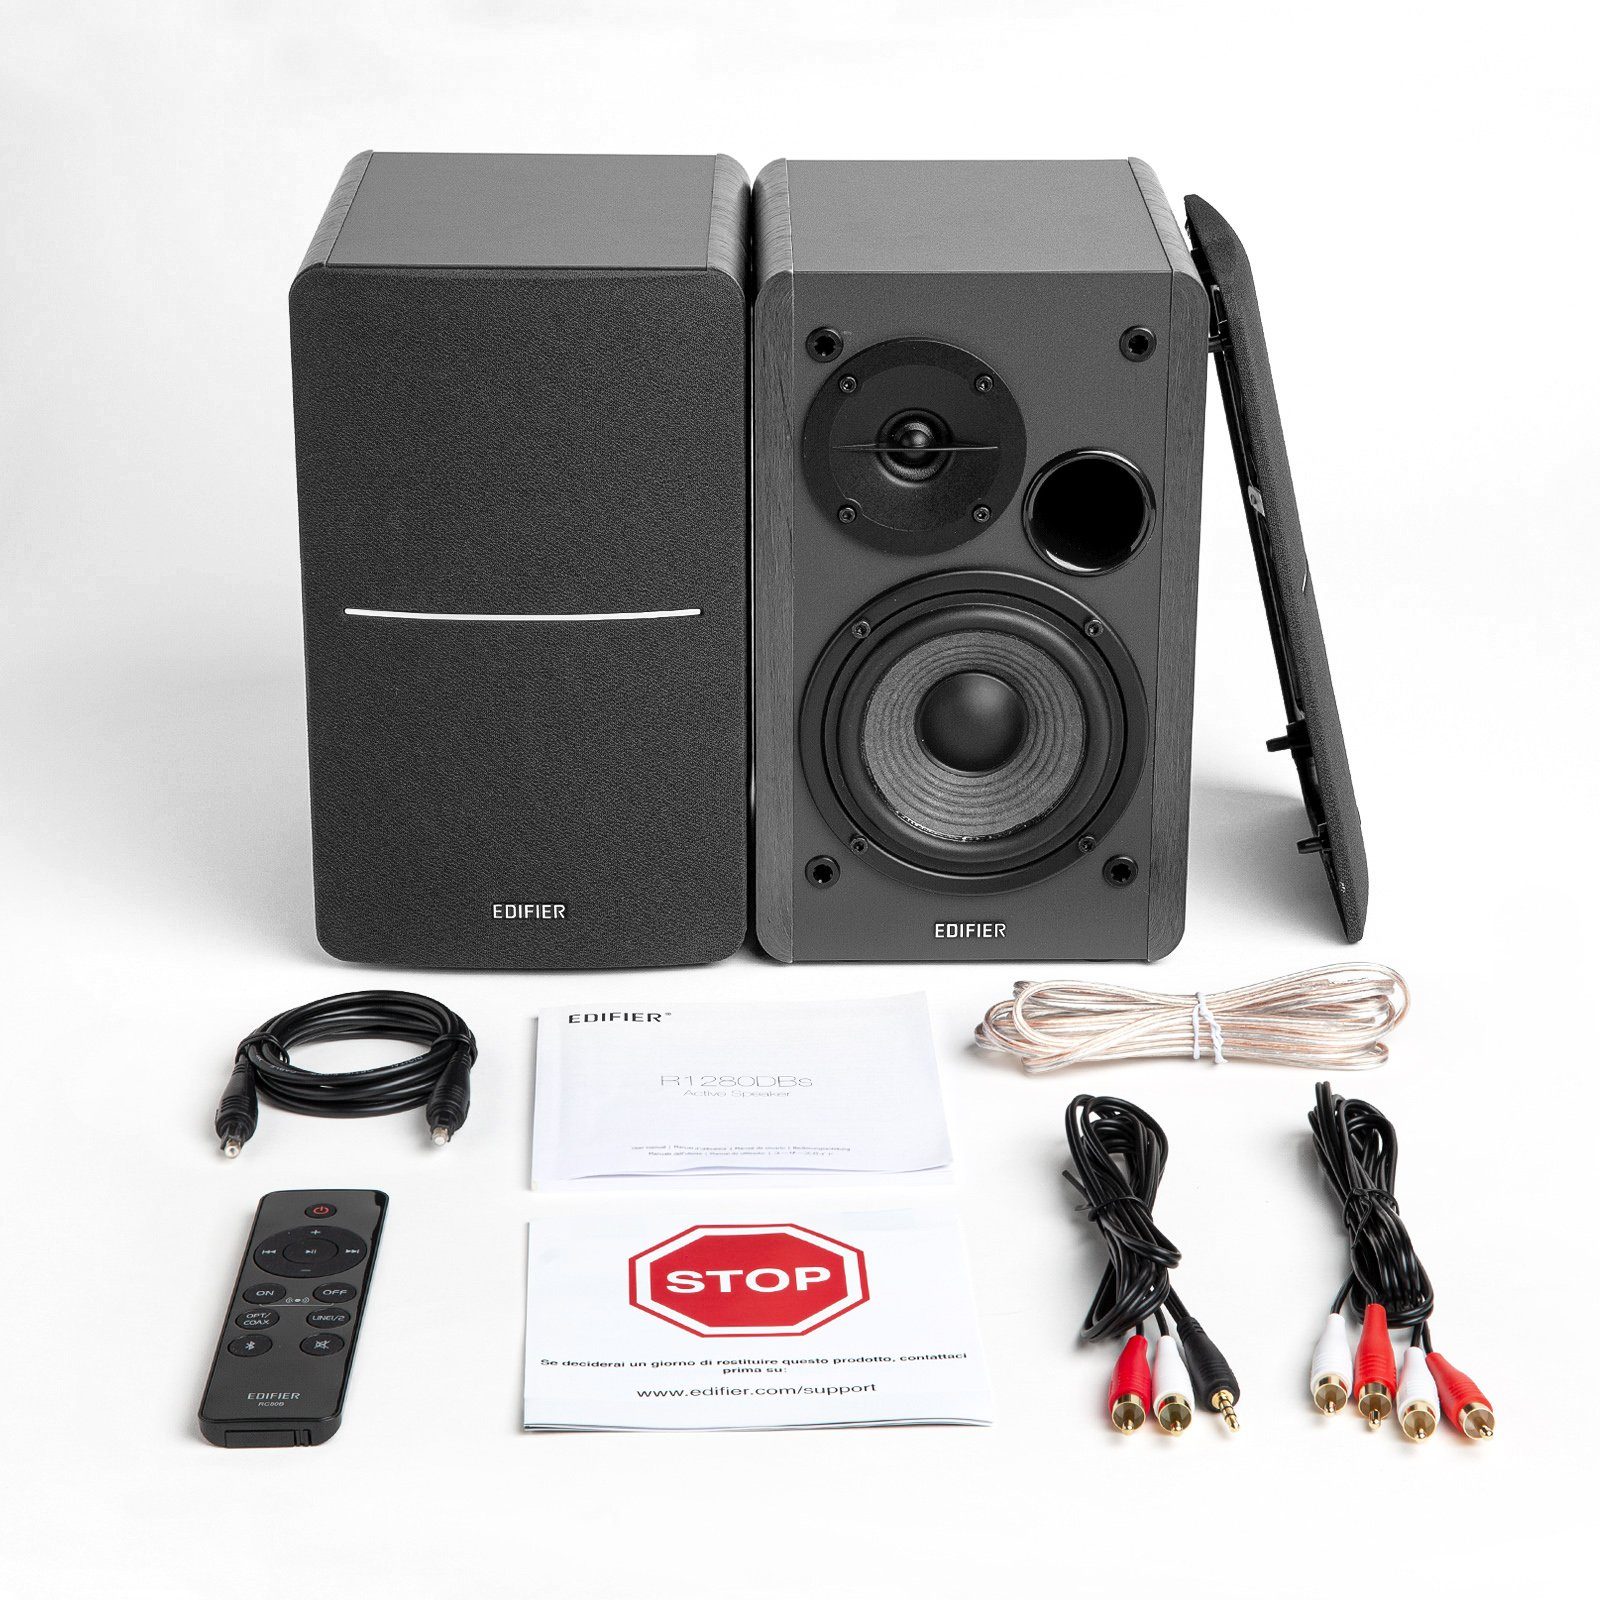 W, Regal-Lautsprecher Edifier® Soundfield Spatializer, R1280DBs (Bluetooth, paar) Fernsteuerung, Stereo schwarz 42